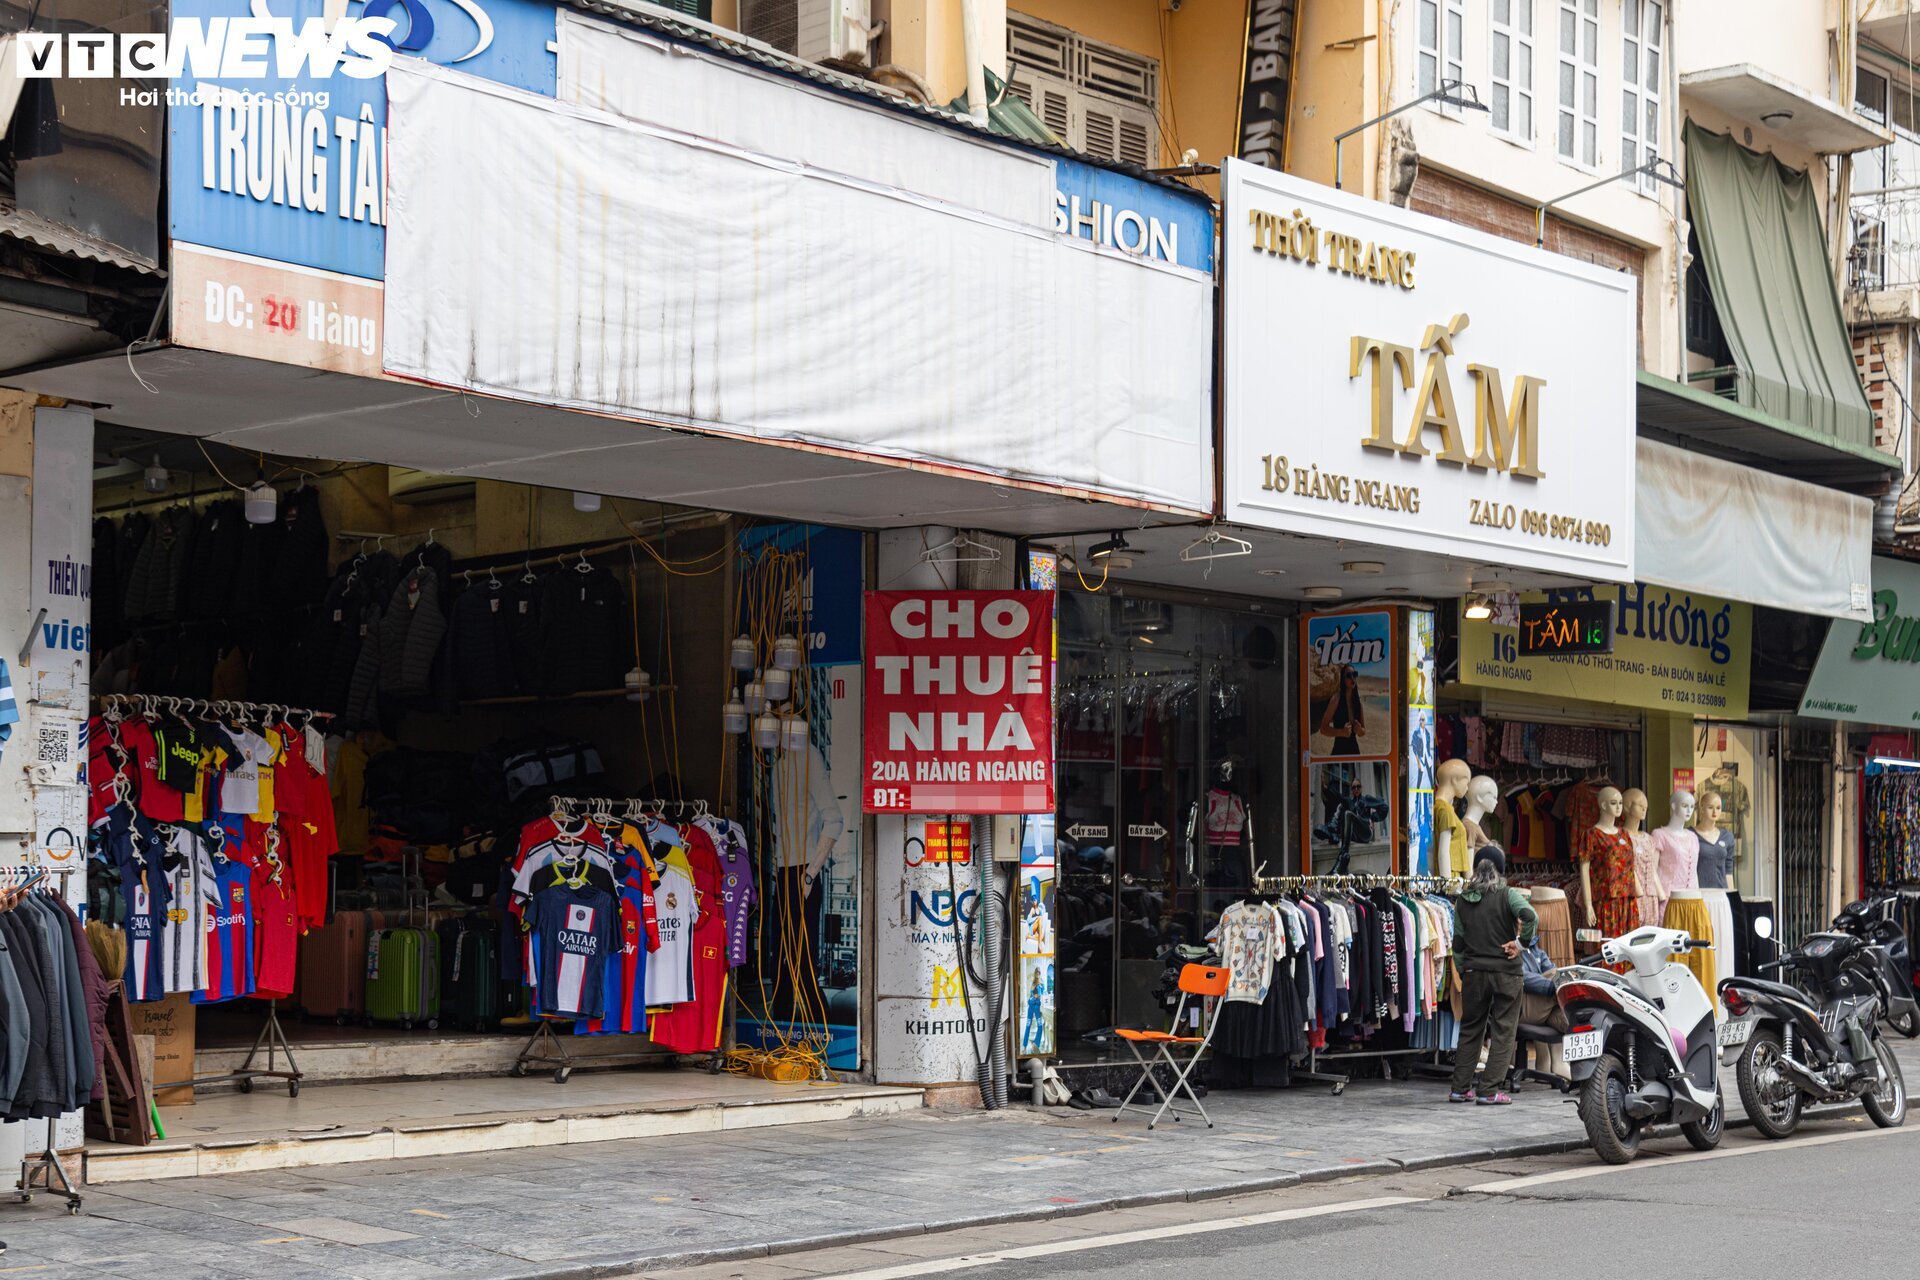 Nhiều cửa hàng giữa phố cổ Hà Nội im lìm đóng cửa, chủ nhà ngóng khách thuê- Ảnh 3.